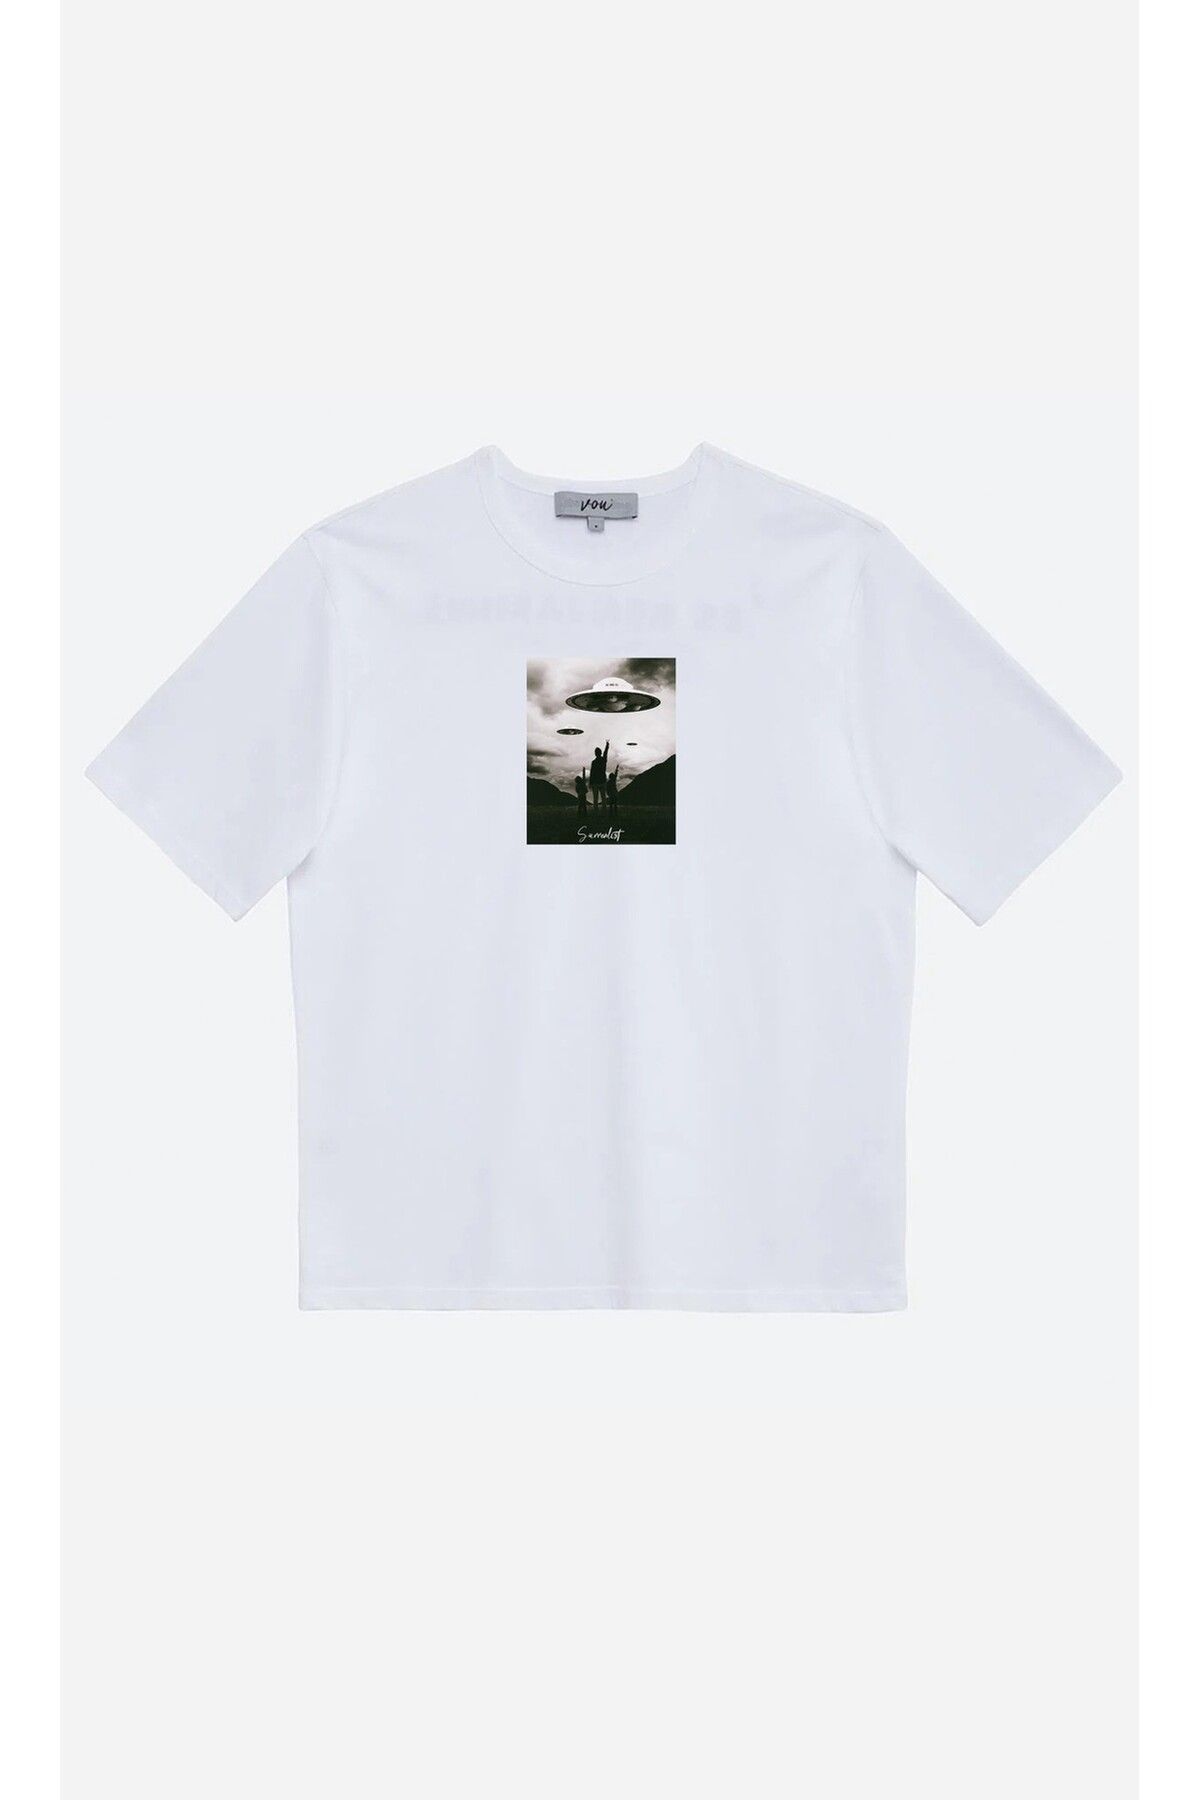 VOU 1010- Surrealist Oversize Unisex T-Shirt